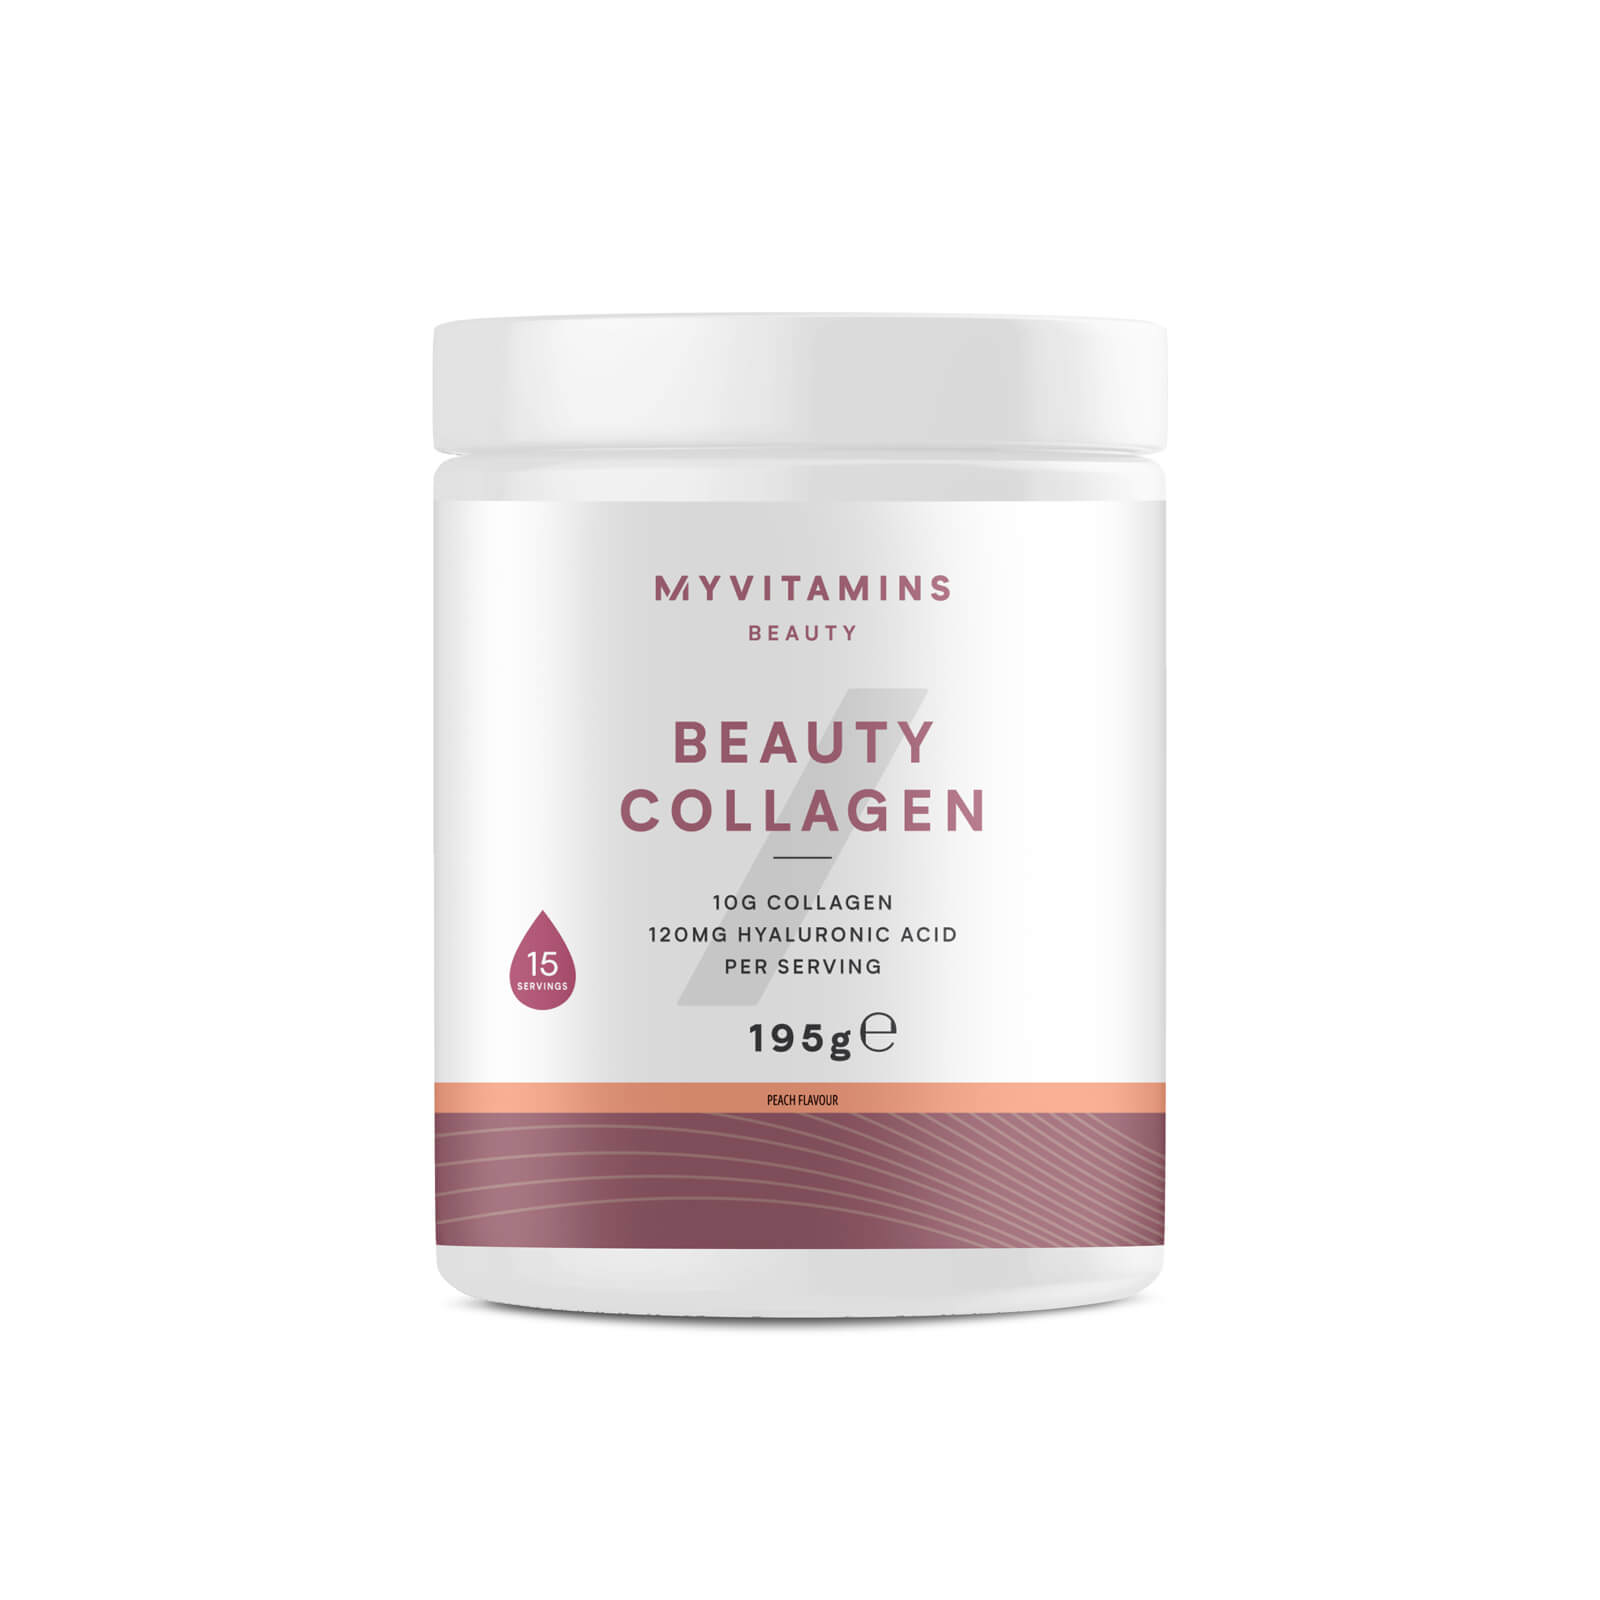 Myvitamins Beauty Collagen Powder - 195g - Peach